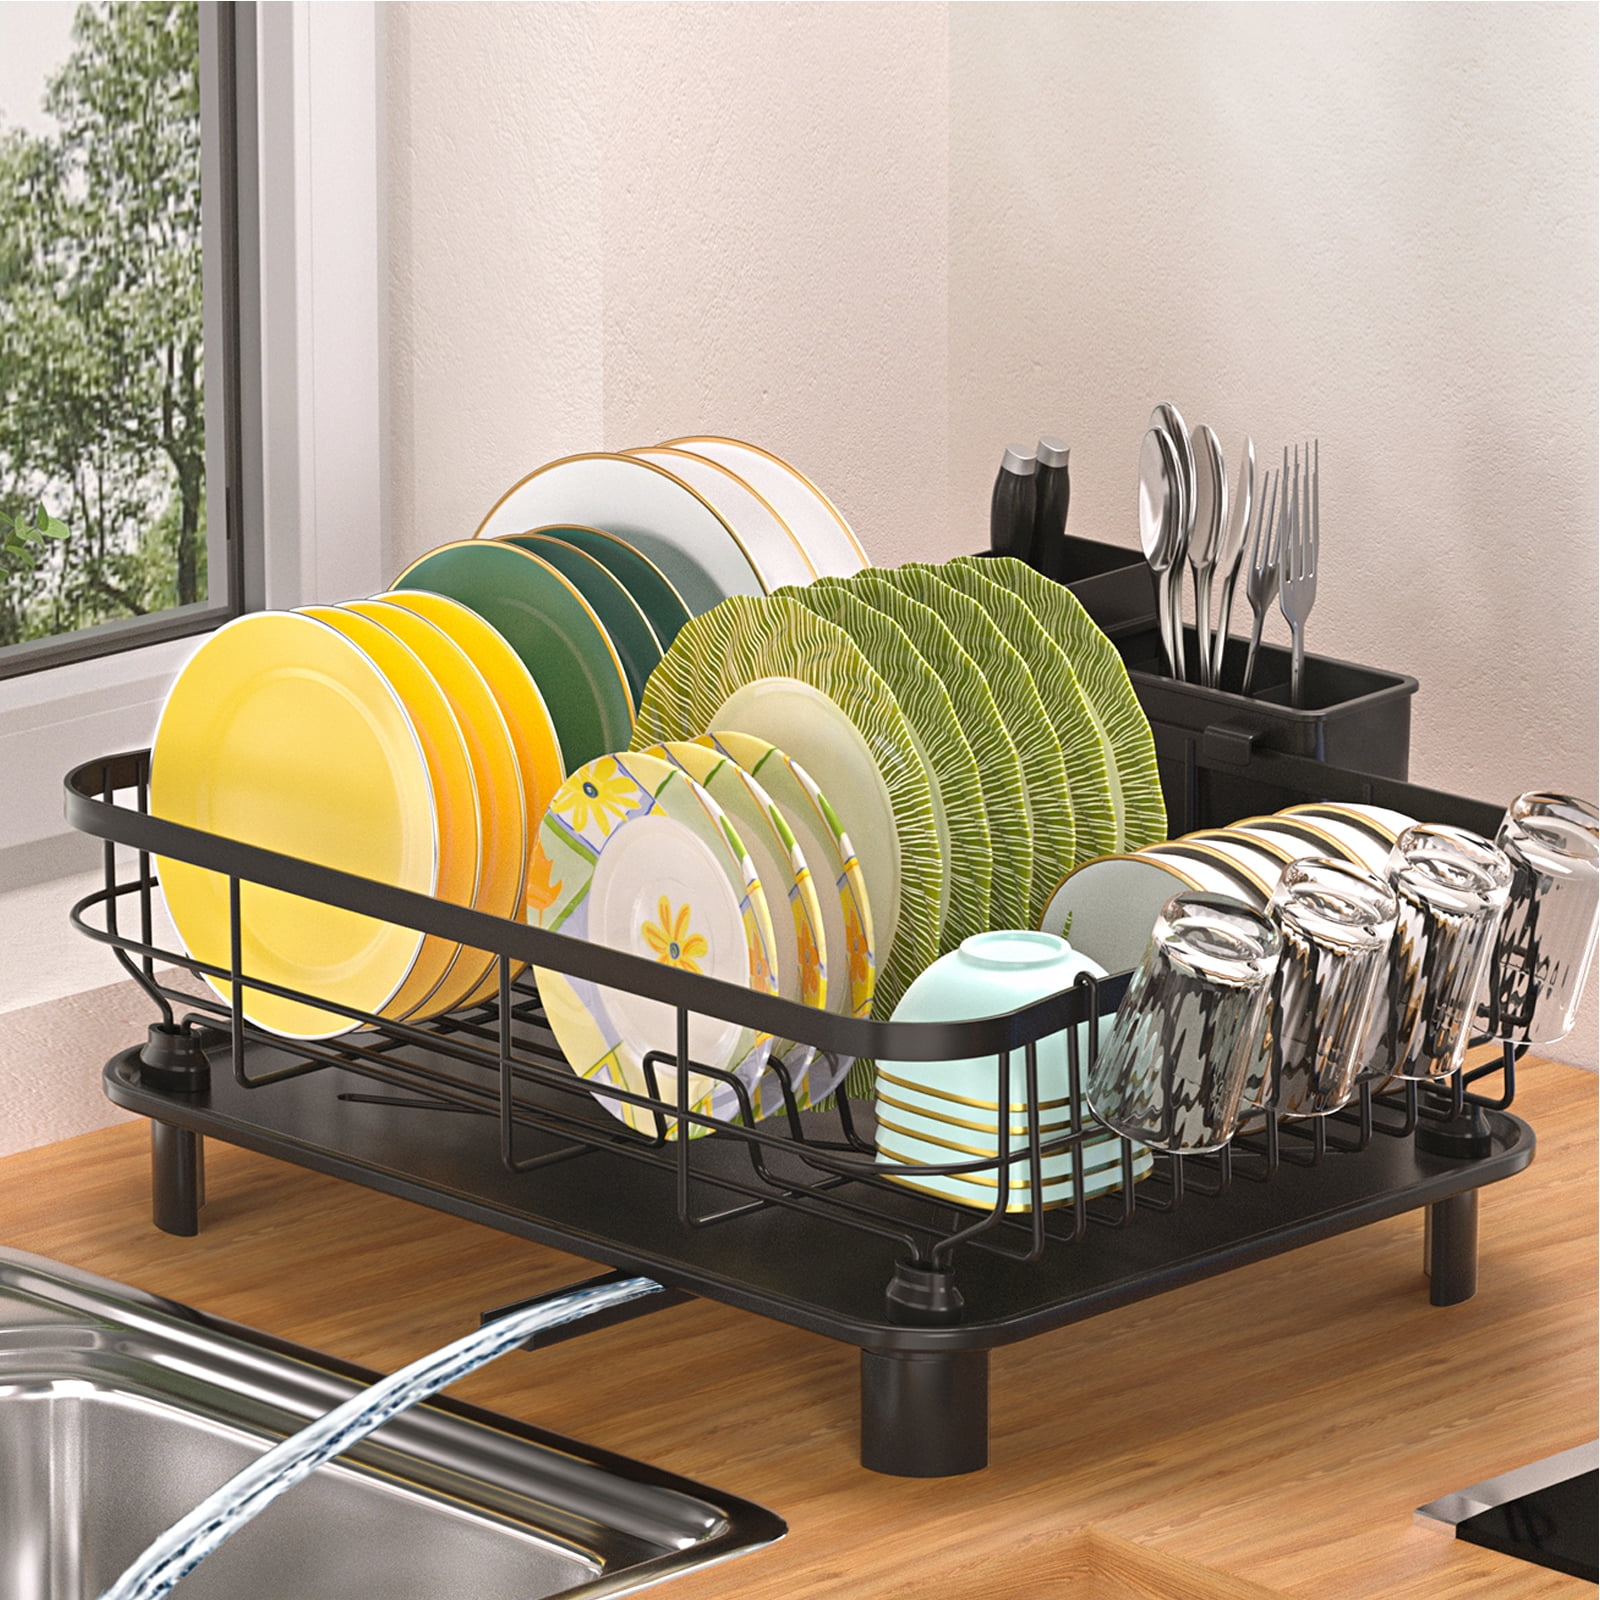 Multifunctional Dish Rack - Efficient Kitchen Organizer 